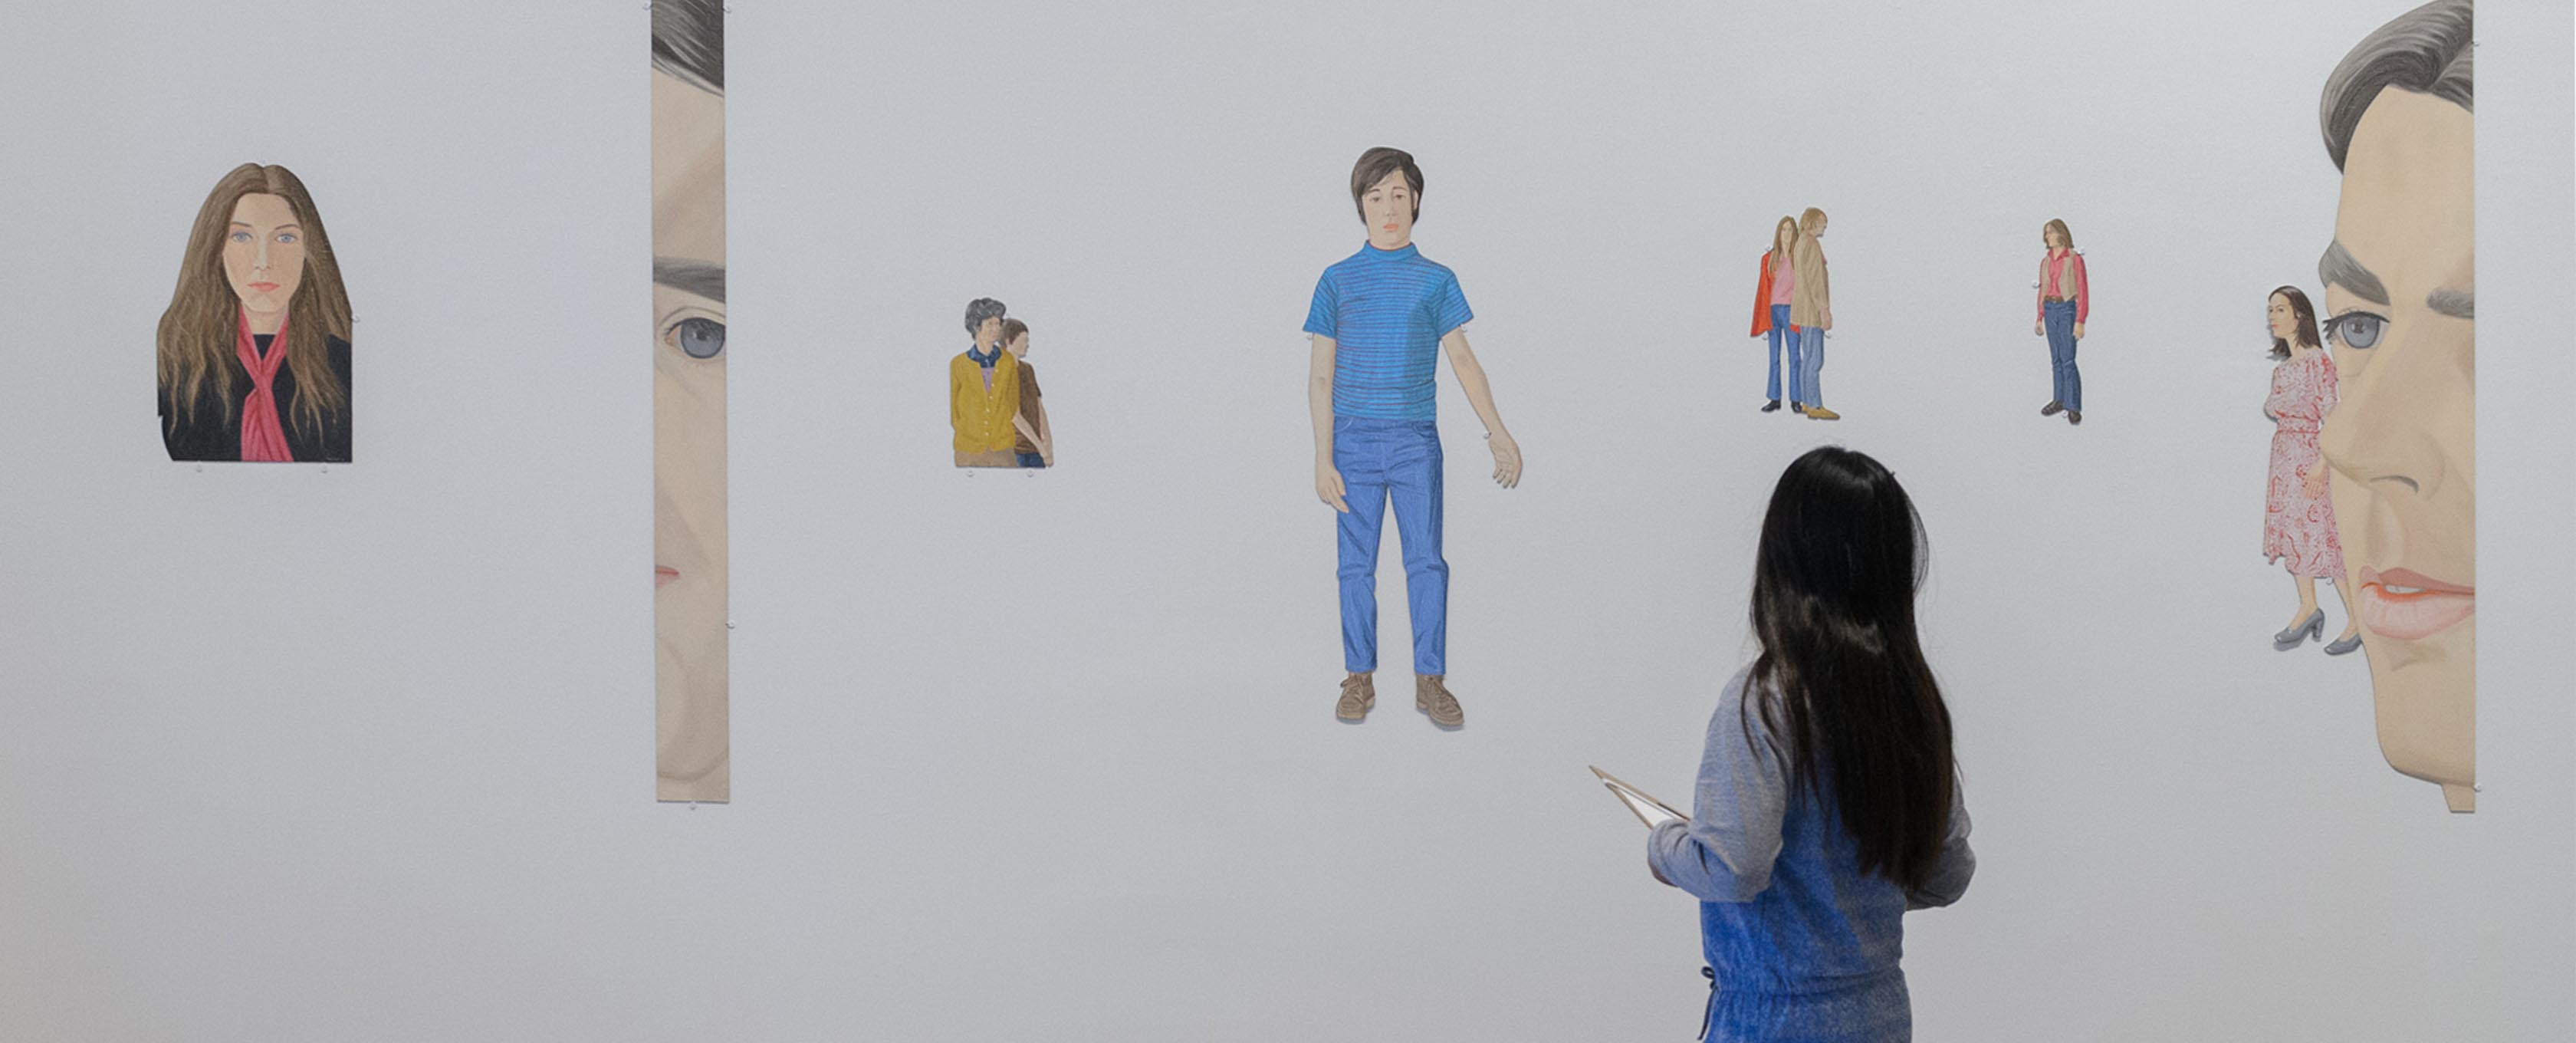 Uma garota fica na frente de desenhos de pessoas.